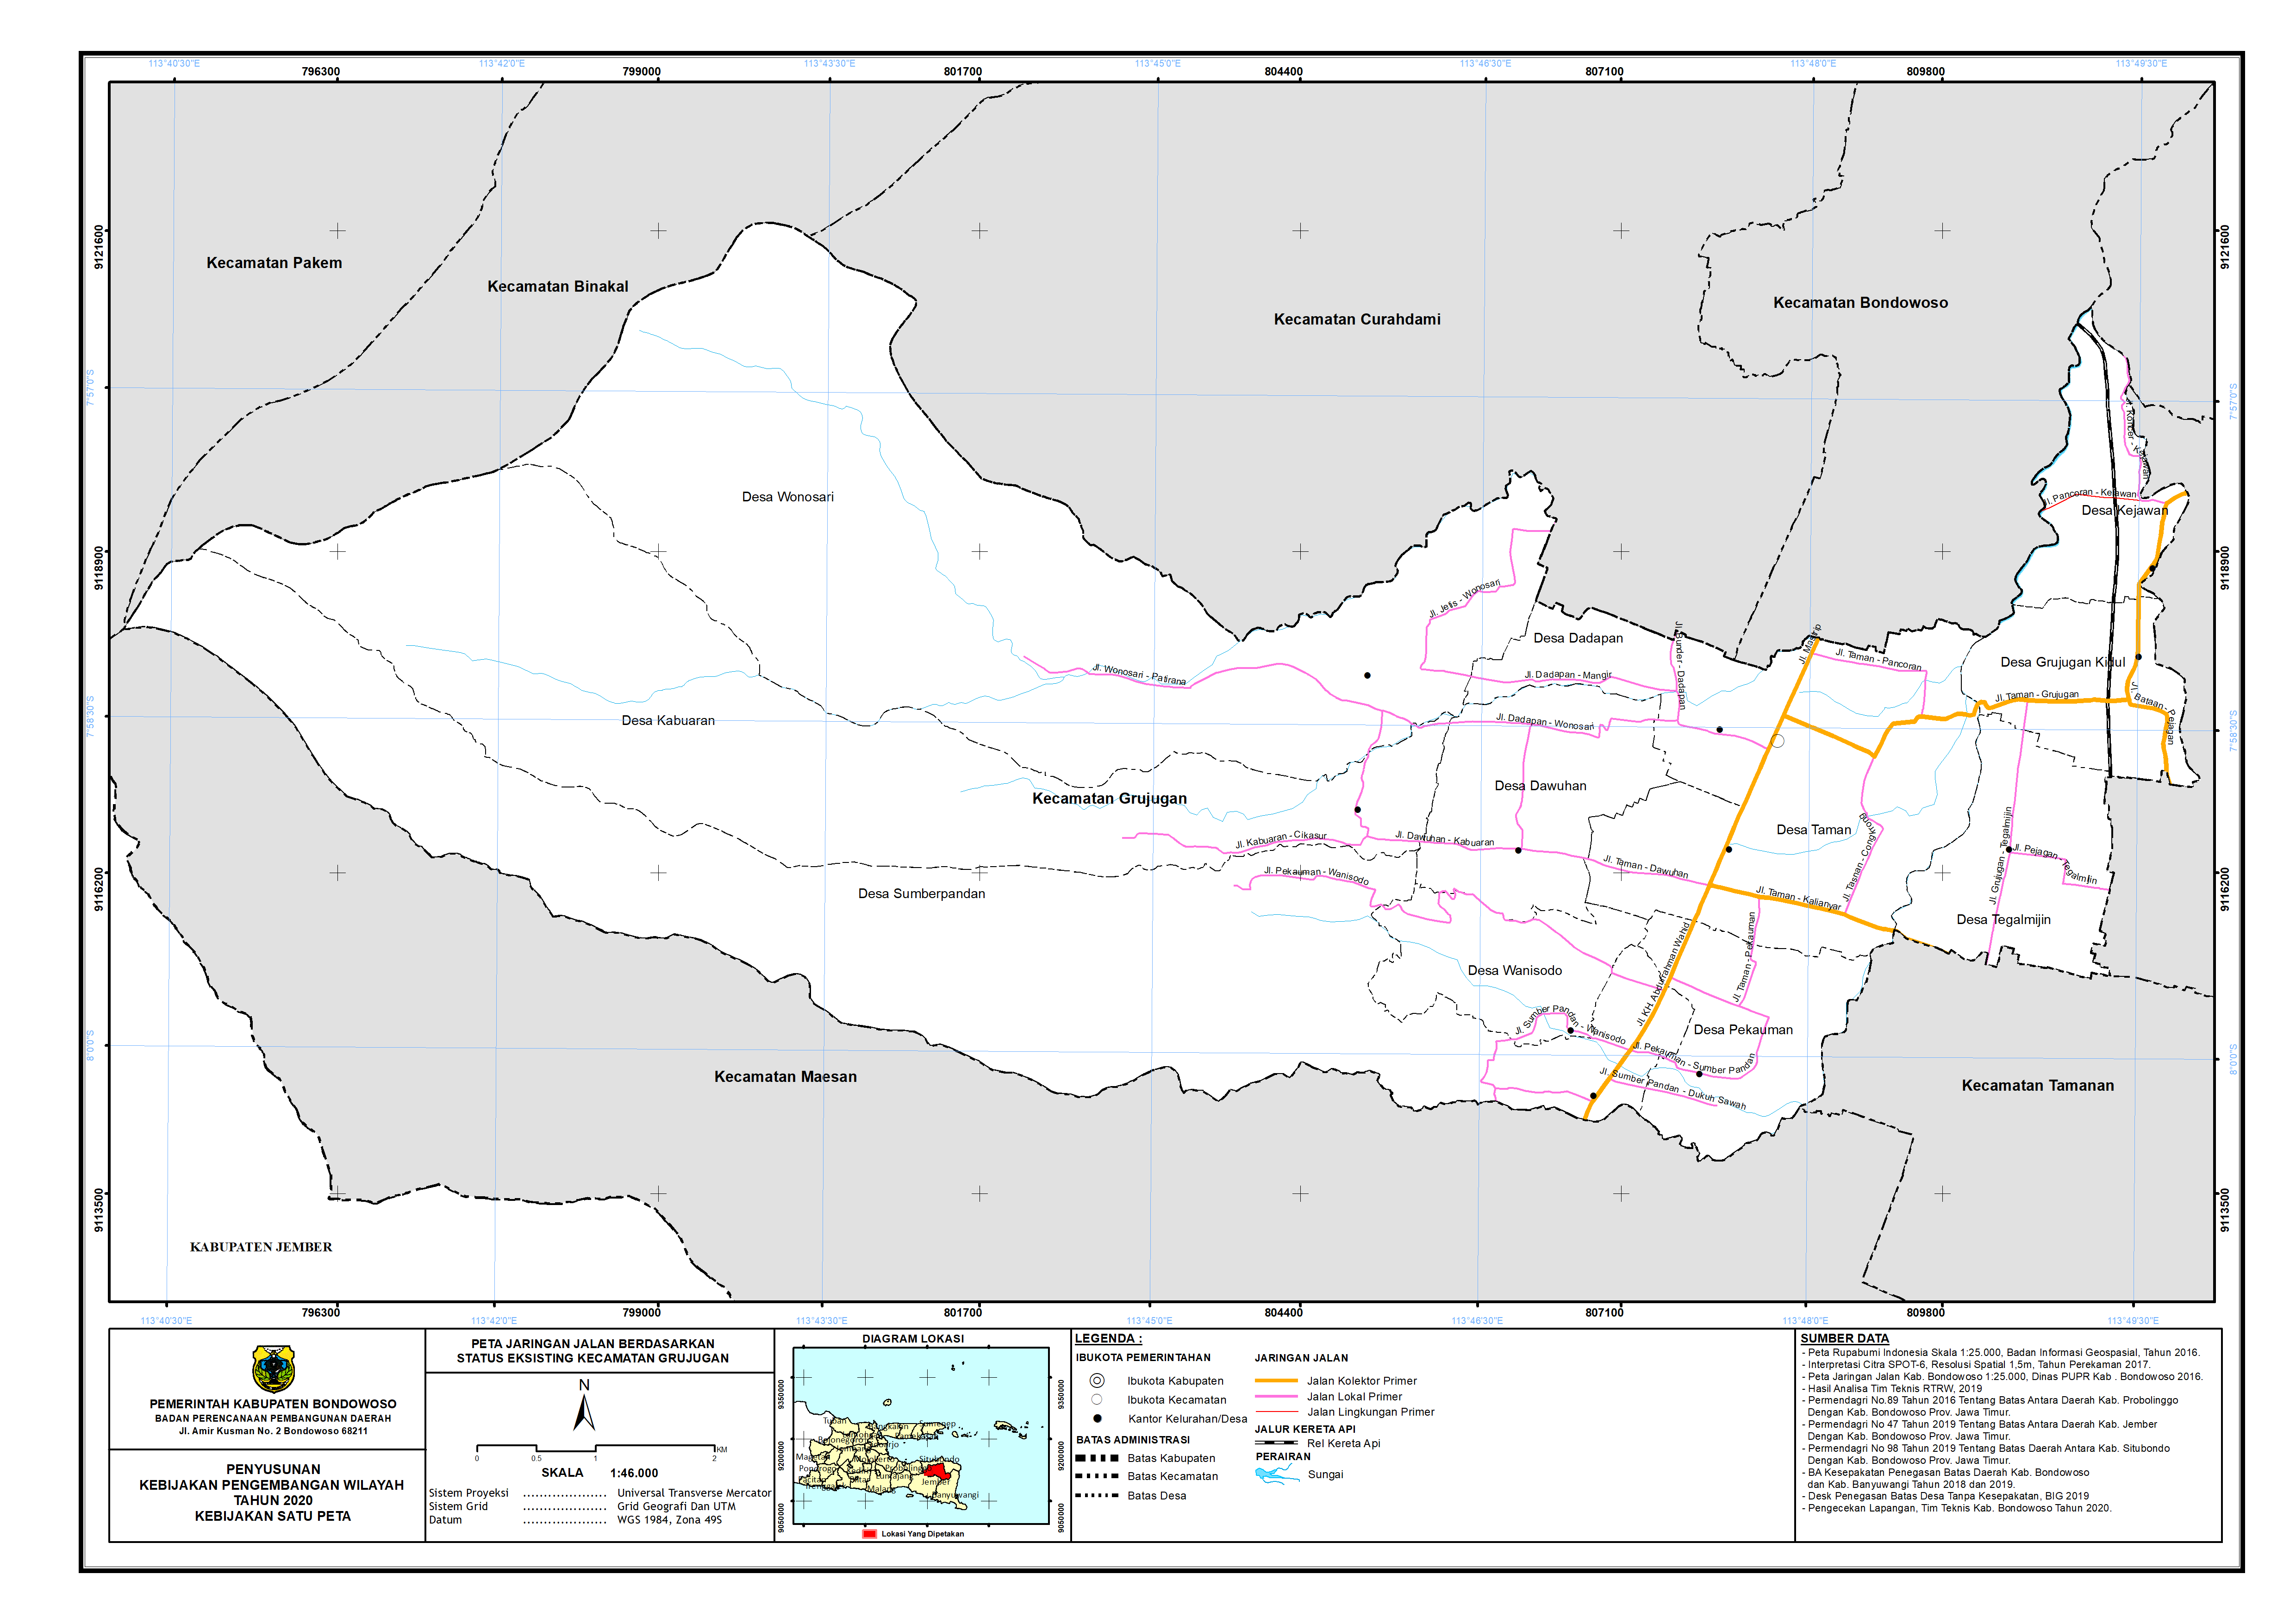 Peta Jaringan Jalan Berdasarkan Status Eksisting Kecamatan Grujugan.png